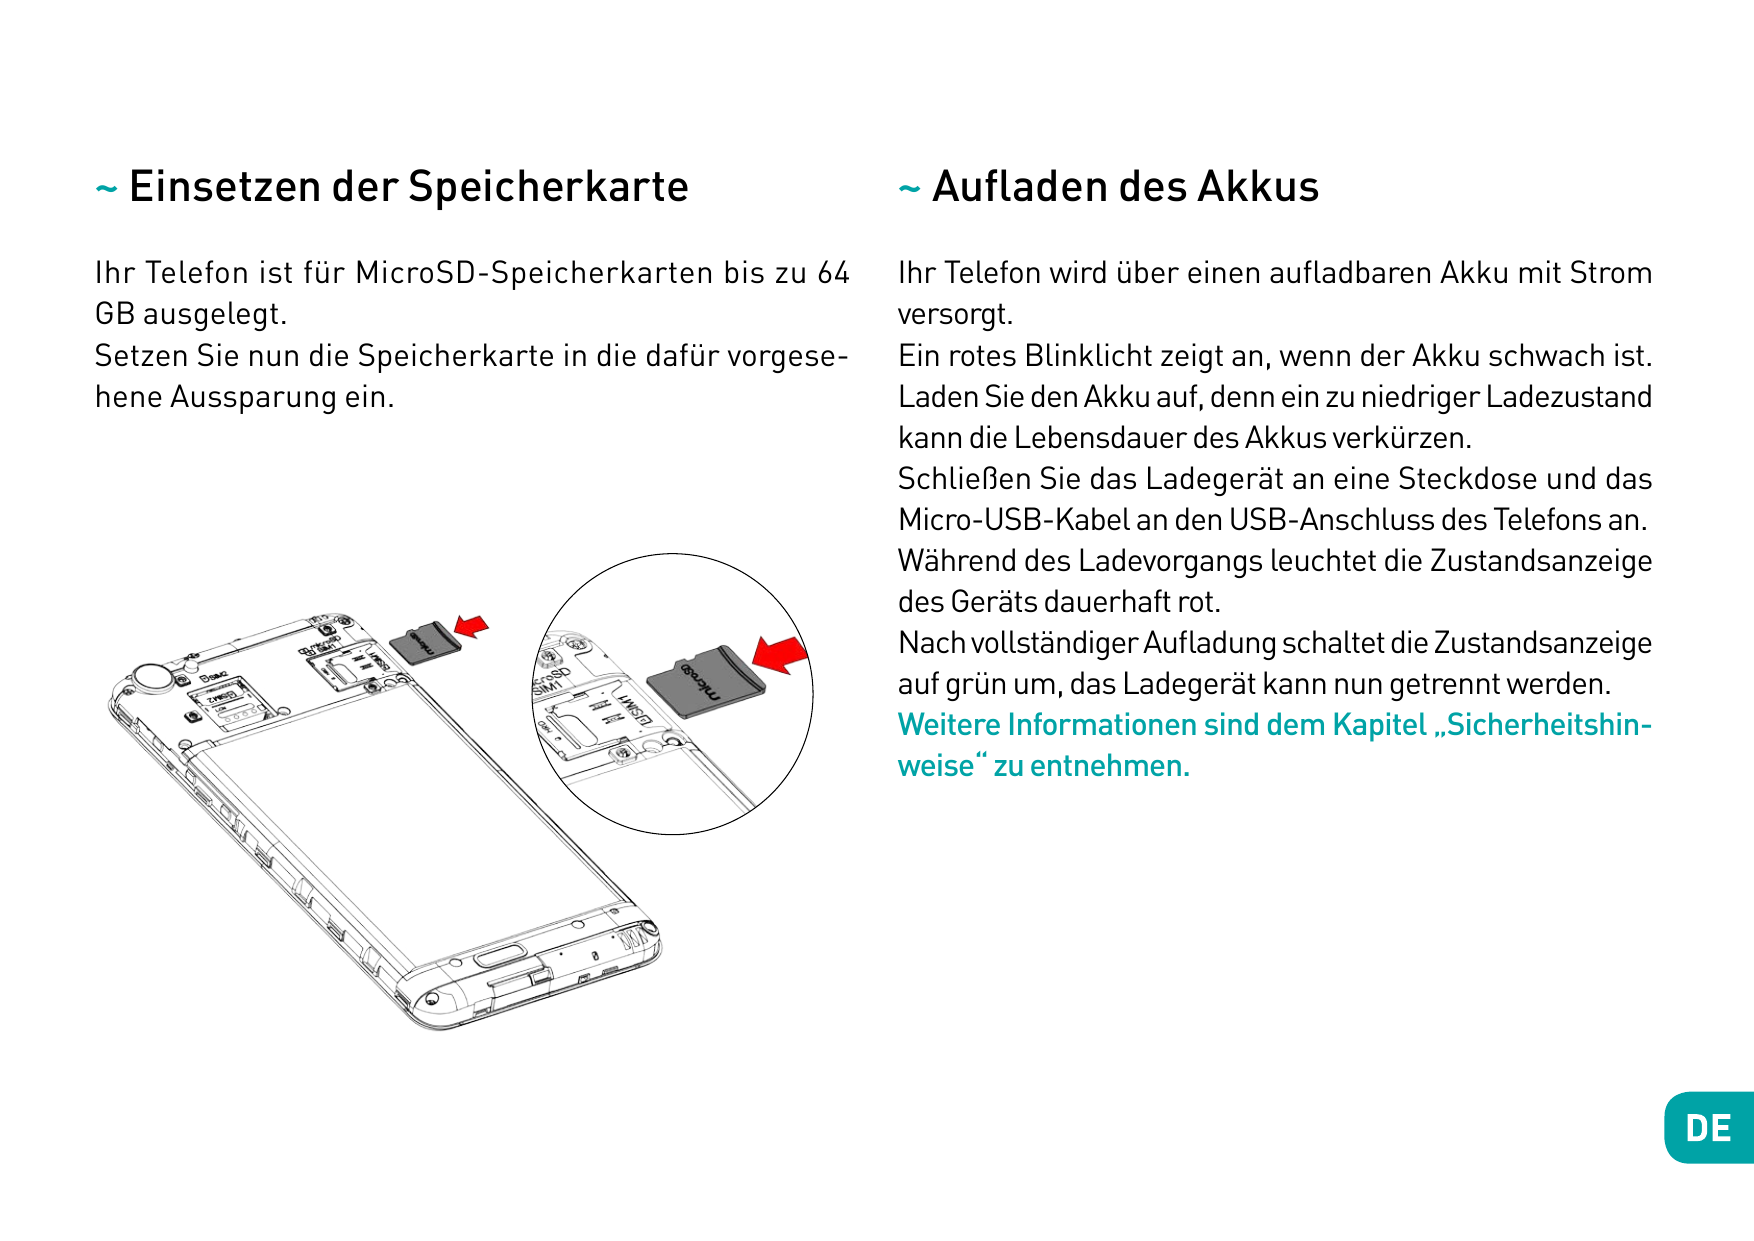 ~ Einsetzen der Speicherkarte~ Aufladen des AkkusIhr Telefon ist für MicroSD-Speicherkarten bis zu 64GB ausgelegt.Setzen Sie nun